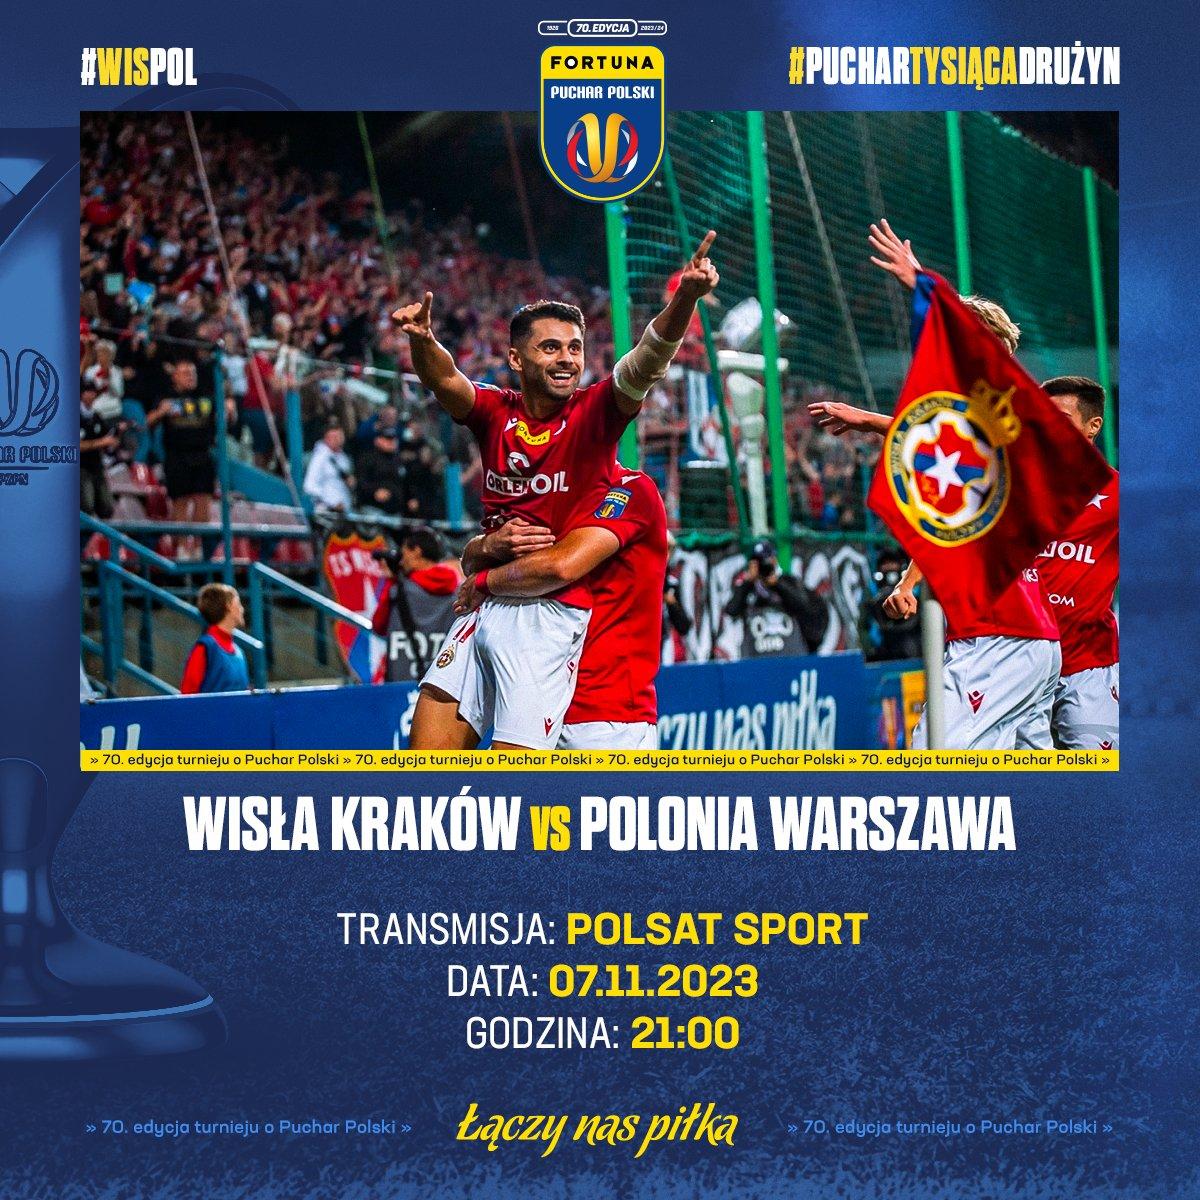 Wisła Kraków - Polonia Warszawa 3:0 (07.11.2023)